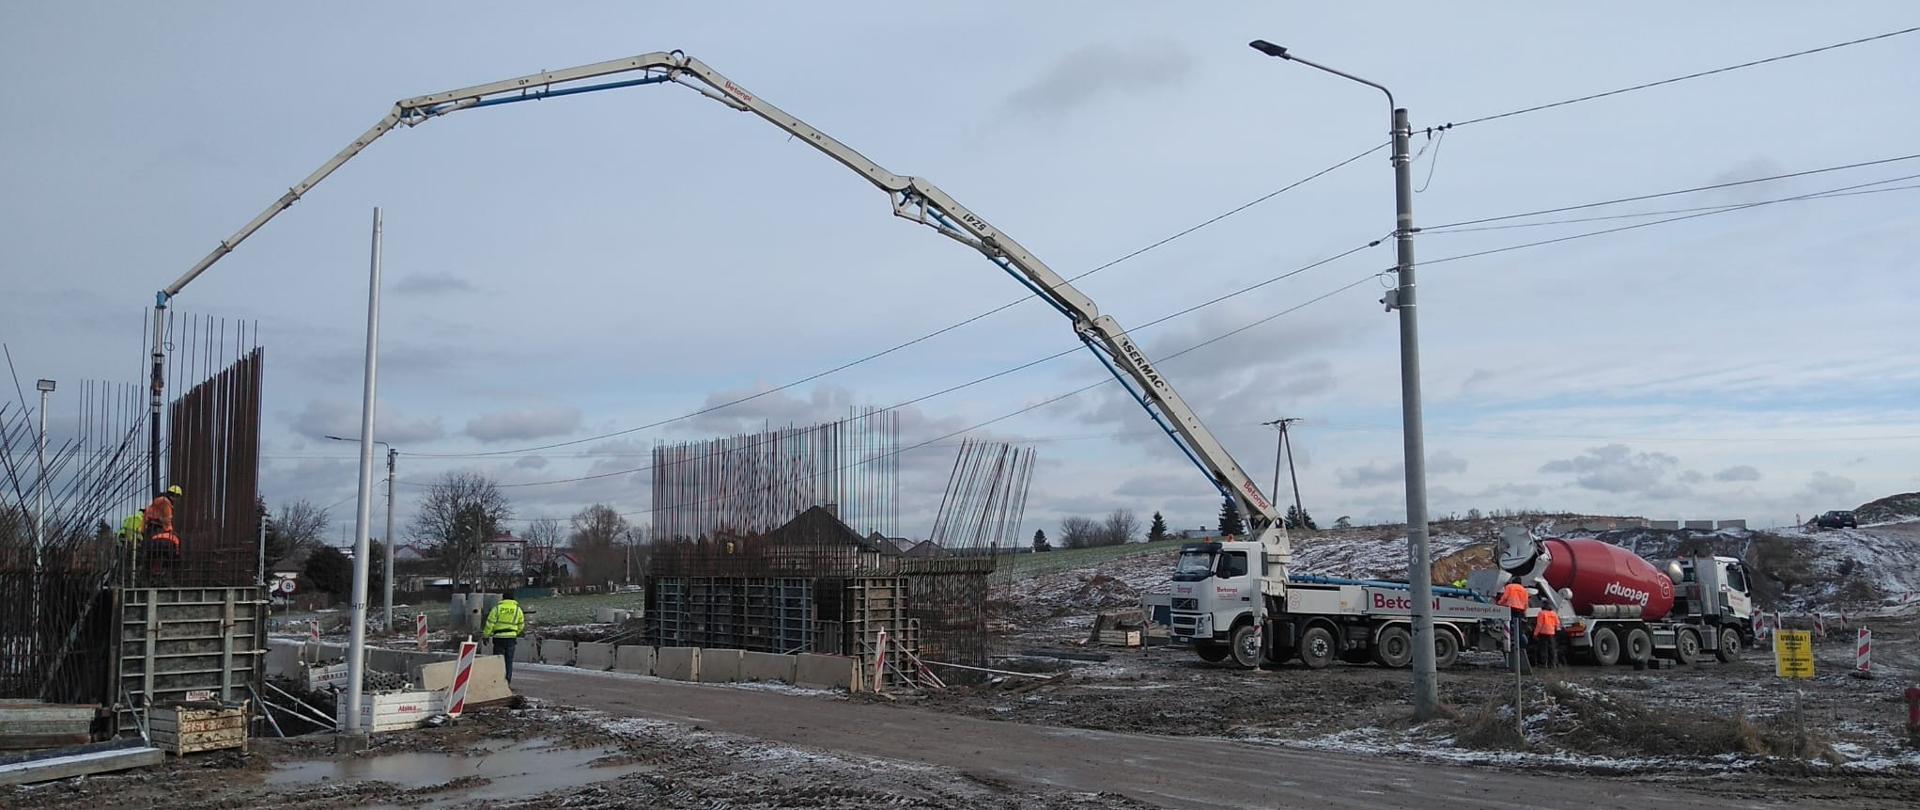 DK9 budowa obwodnicy Ostrowca Świętokrzyskiego - betonowanie obiektu mostowego 